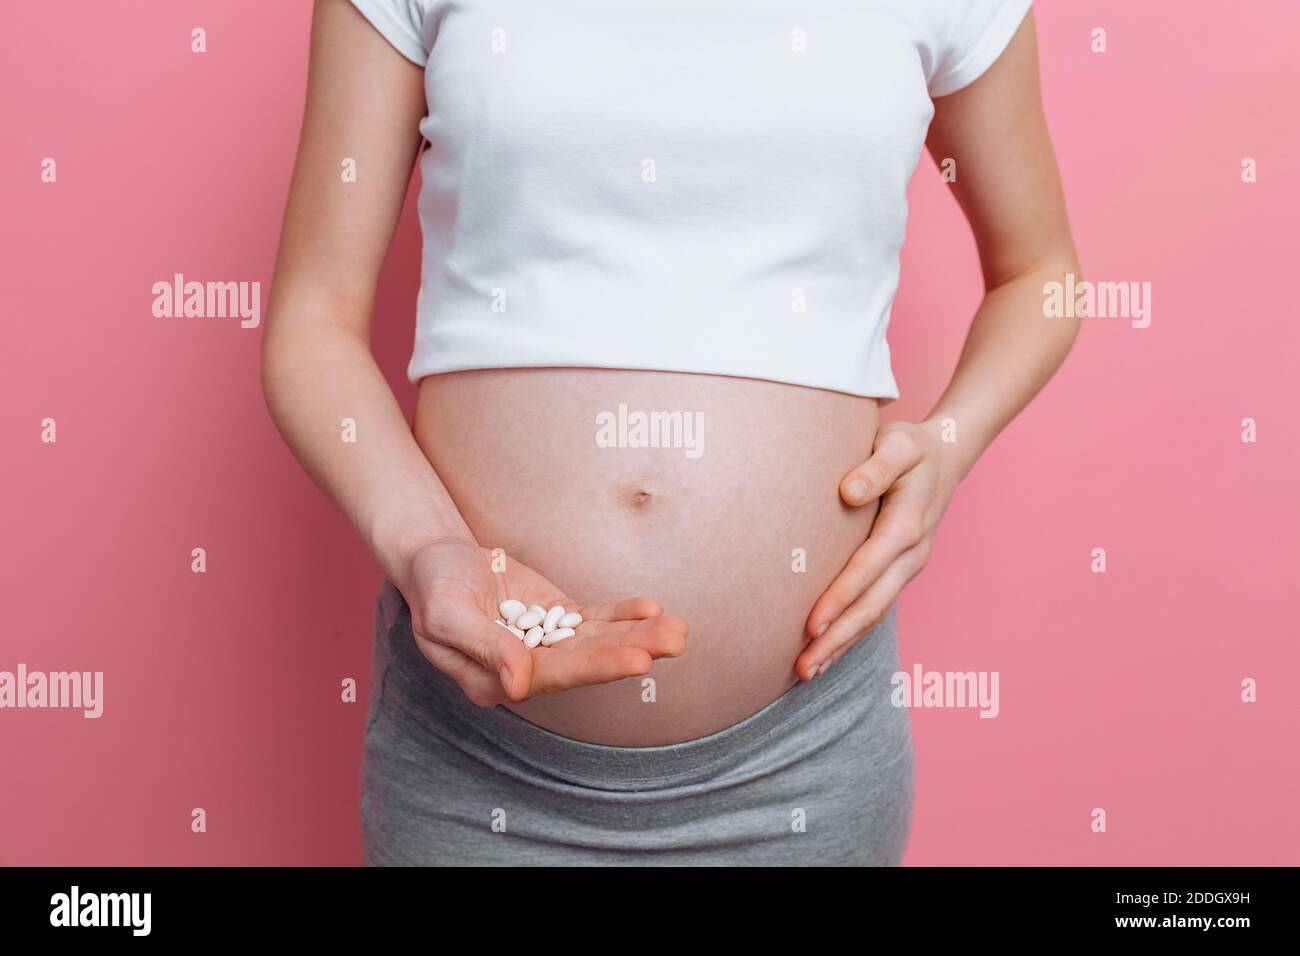 https://c8.alamy.com/compes/2ddgx9h/vientre-de-una-mujer-embarazada-que-sostiene-una-mano-bajo-el-vientre-en-la-otra-sostiene-pildoras-blancas-redondas-para-la-atencion-de-la-salud-primer-plano-del-cuerpo-humano-sin-un-2ddgx9h.jpg